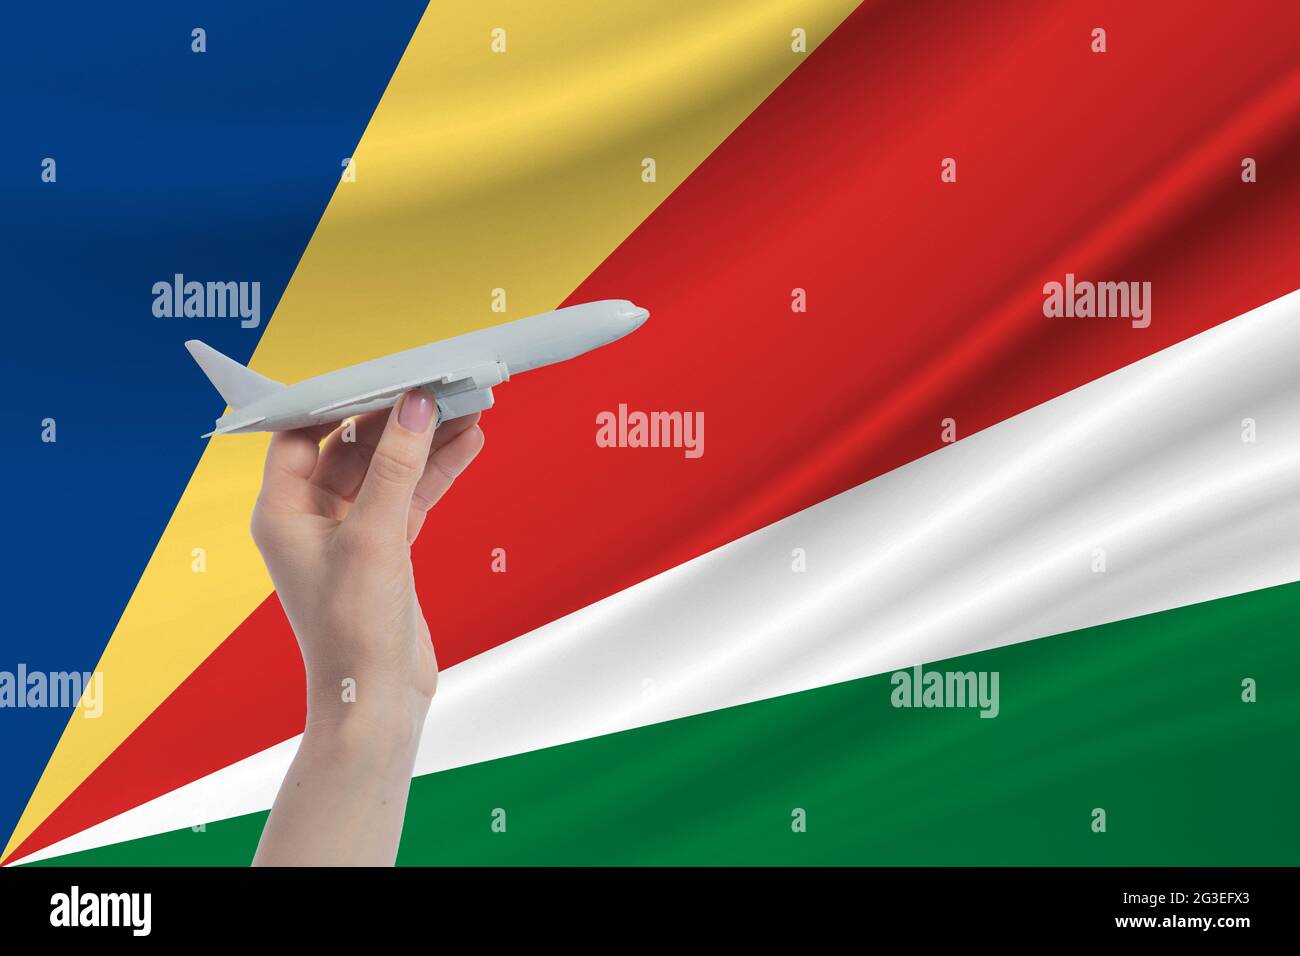 Avion en main avec le drapeau national des Seychelles. Voyage aux Seychelles. Banque D'Images